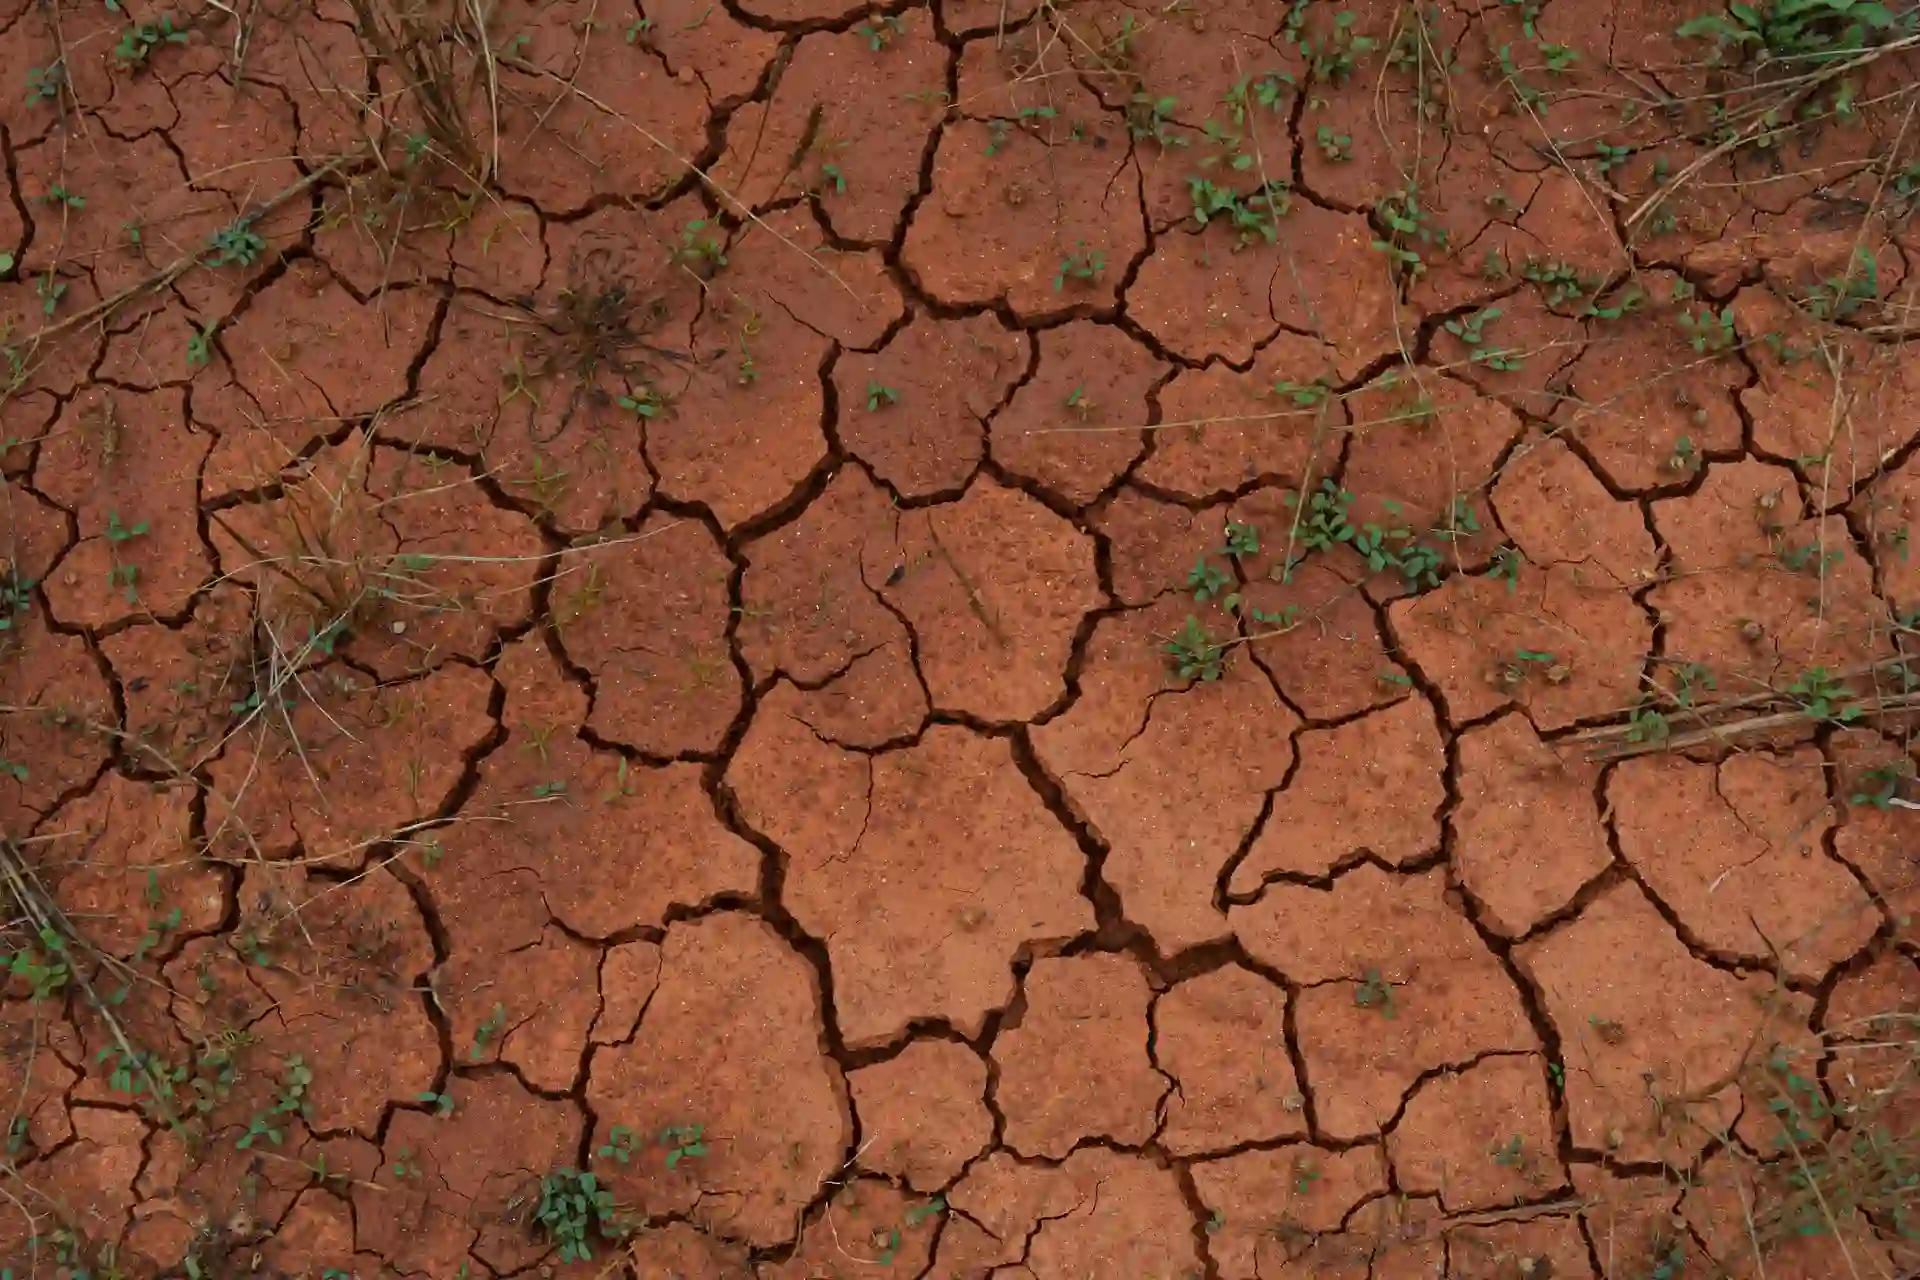 España es uno de los países más afectados por la degradación del suelo en Europa. Urge aumentar la materia orgánica / Foto: PB